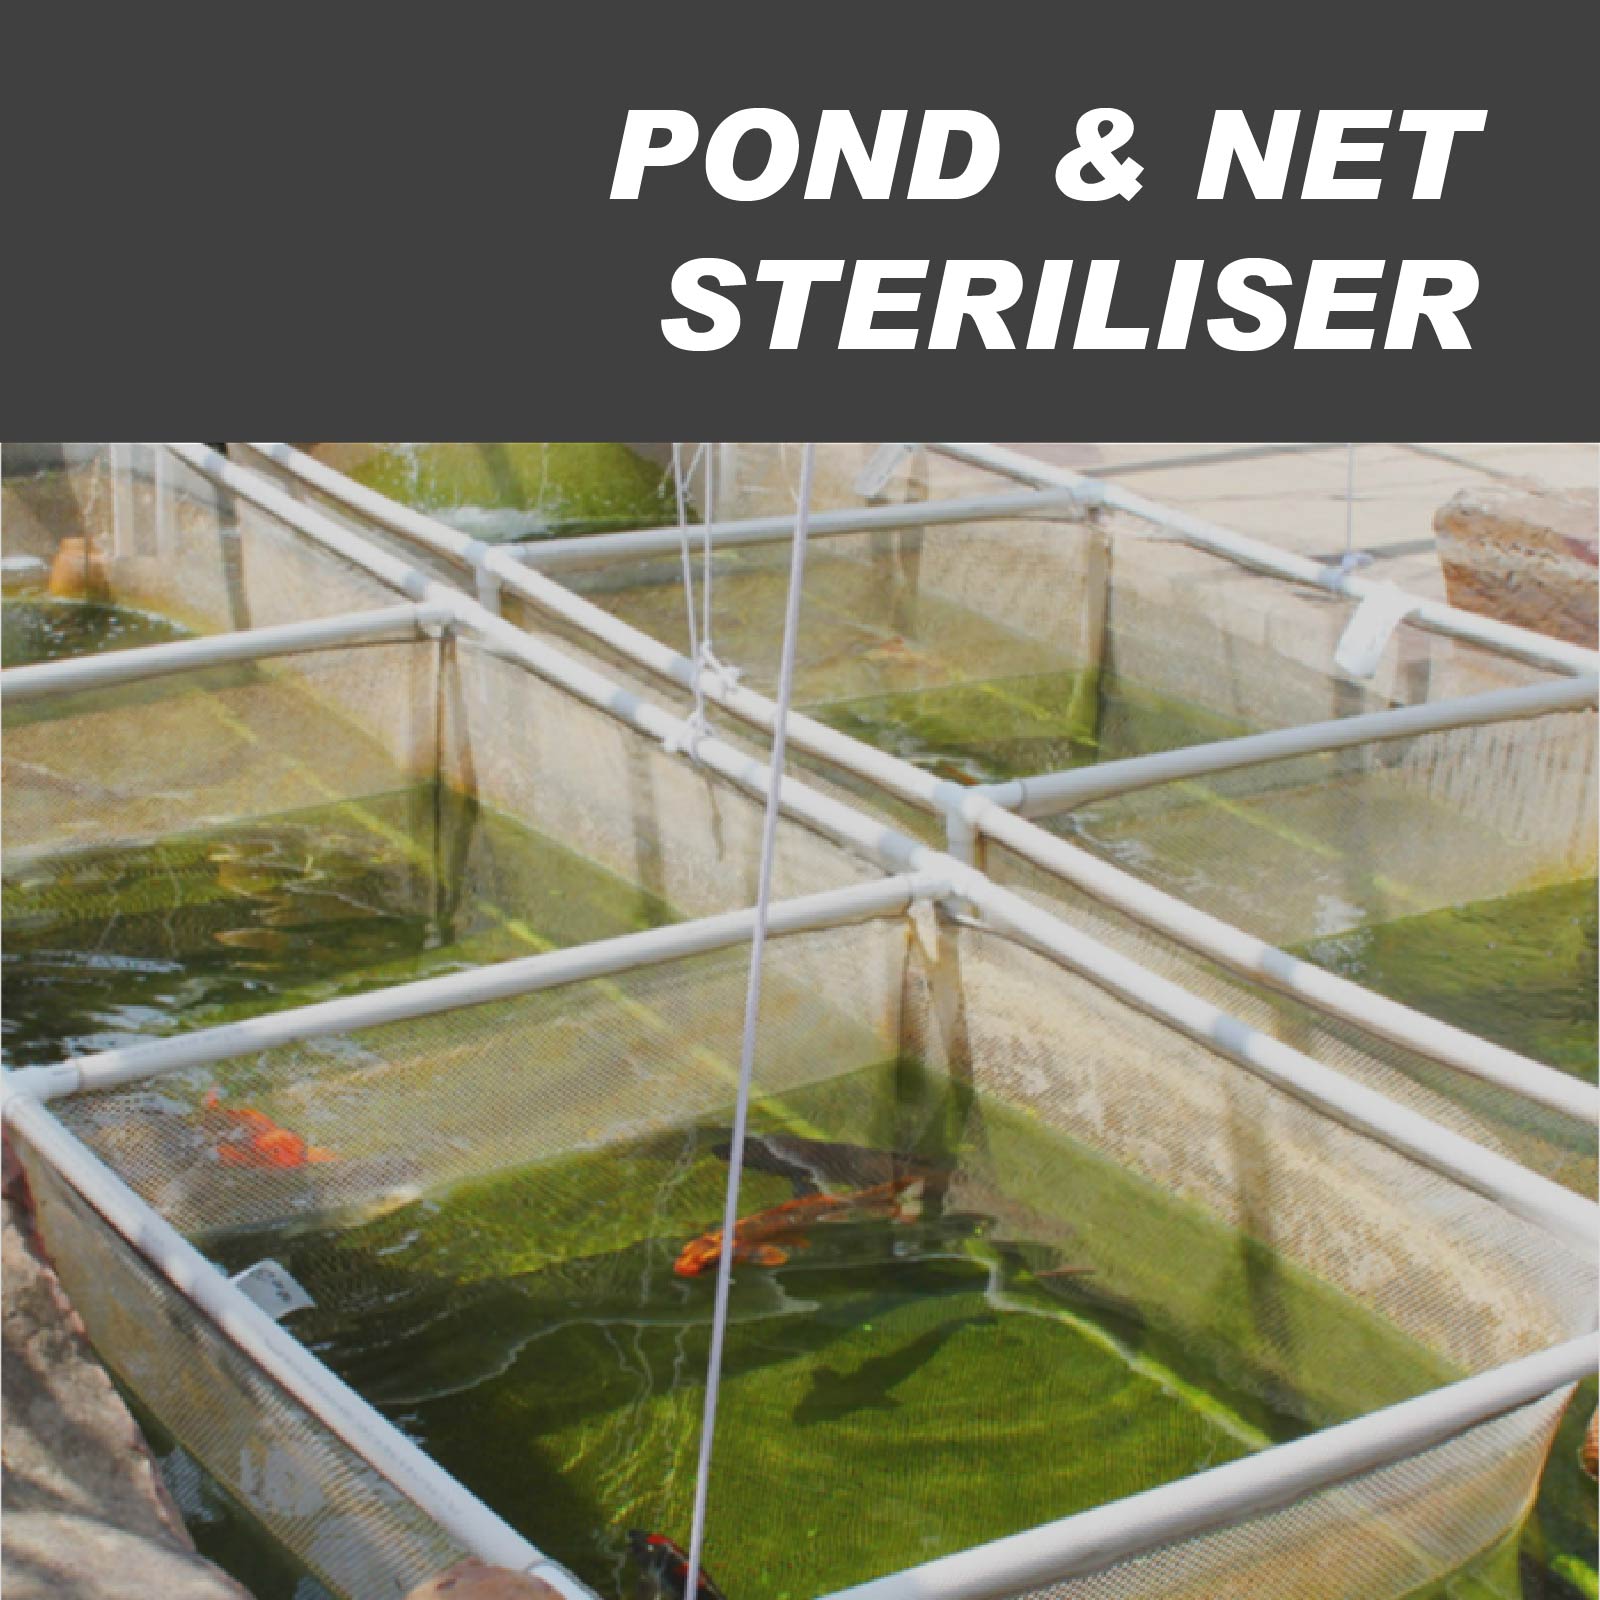 Pond & Net Steriliser